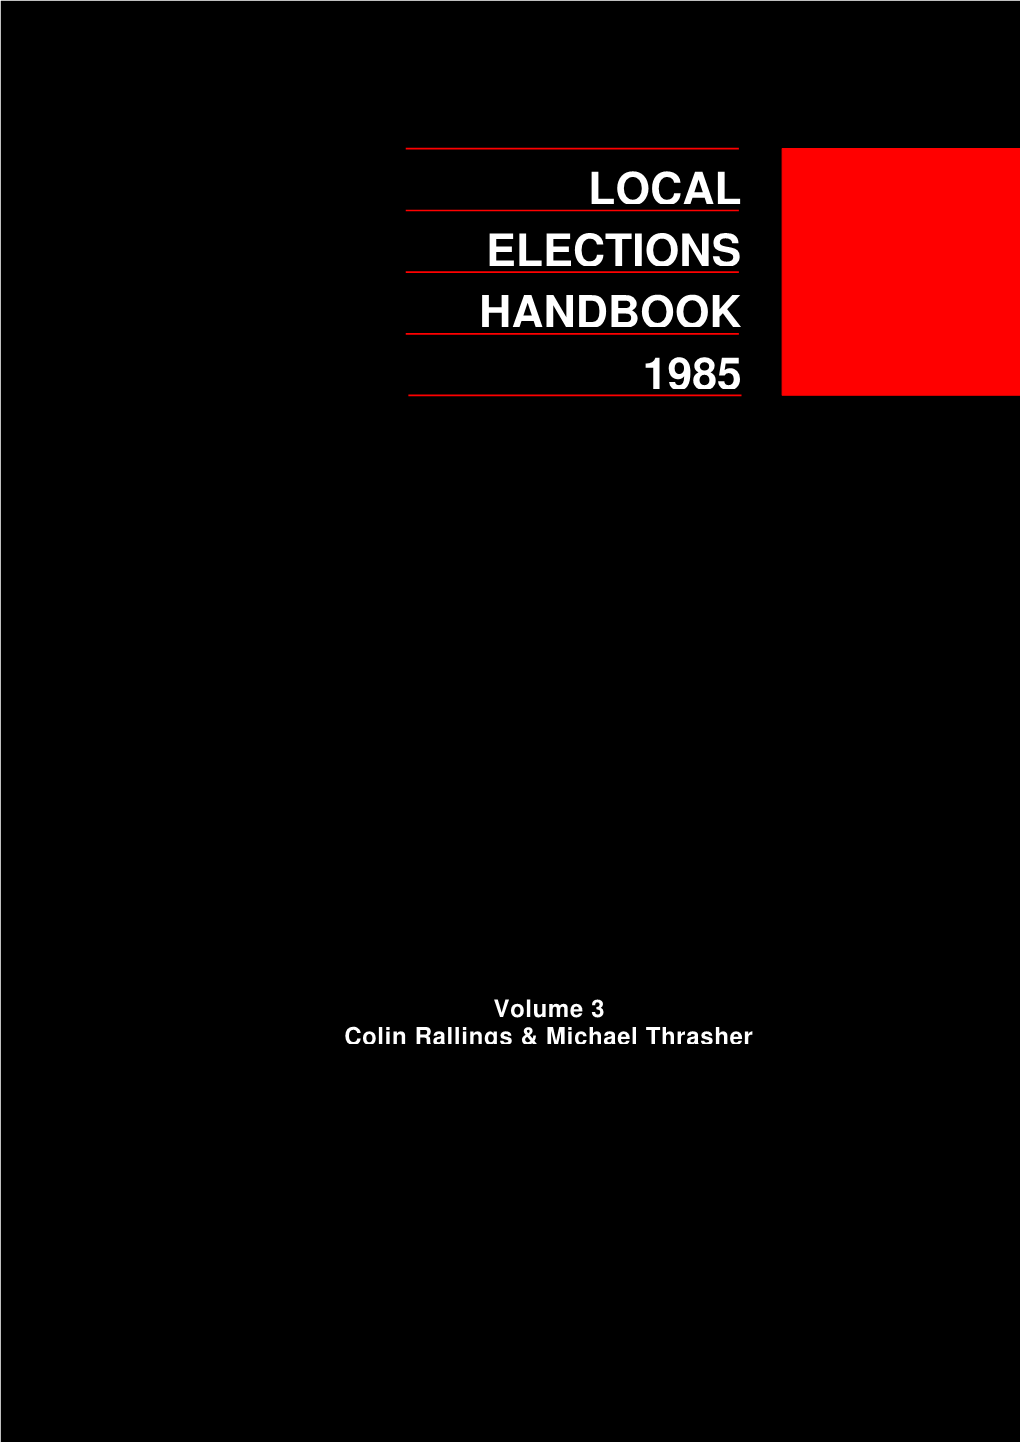 Local 1985 Handbook Elections